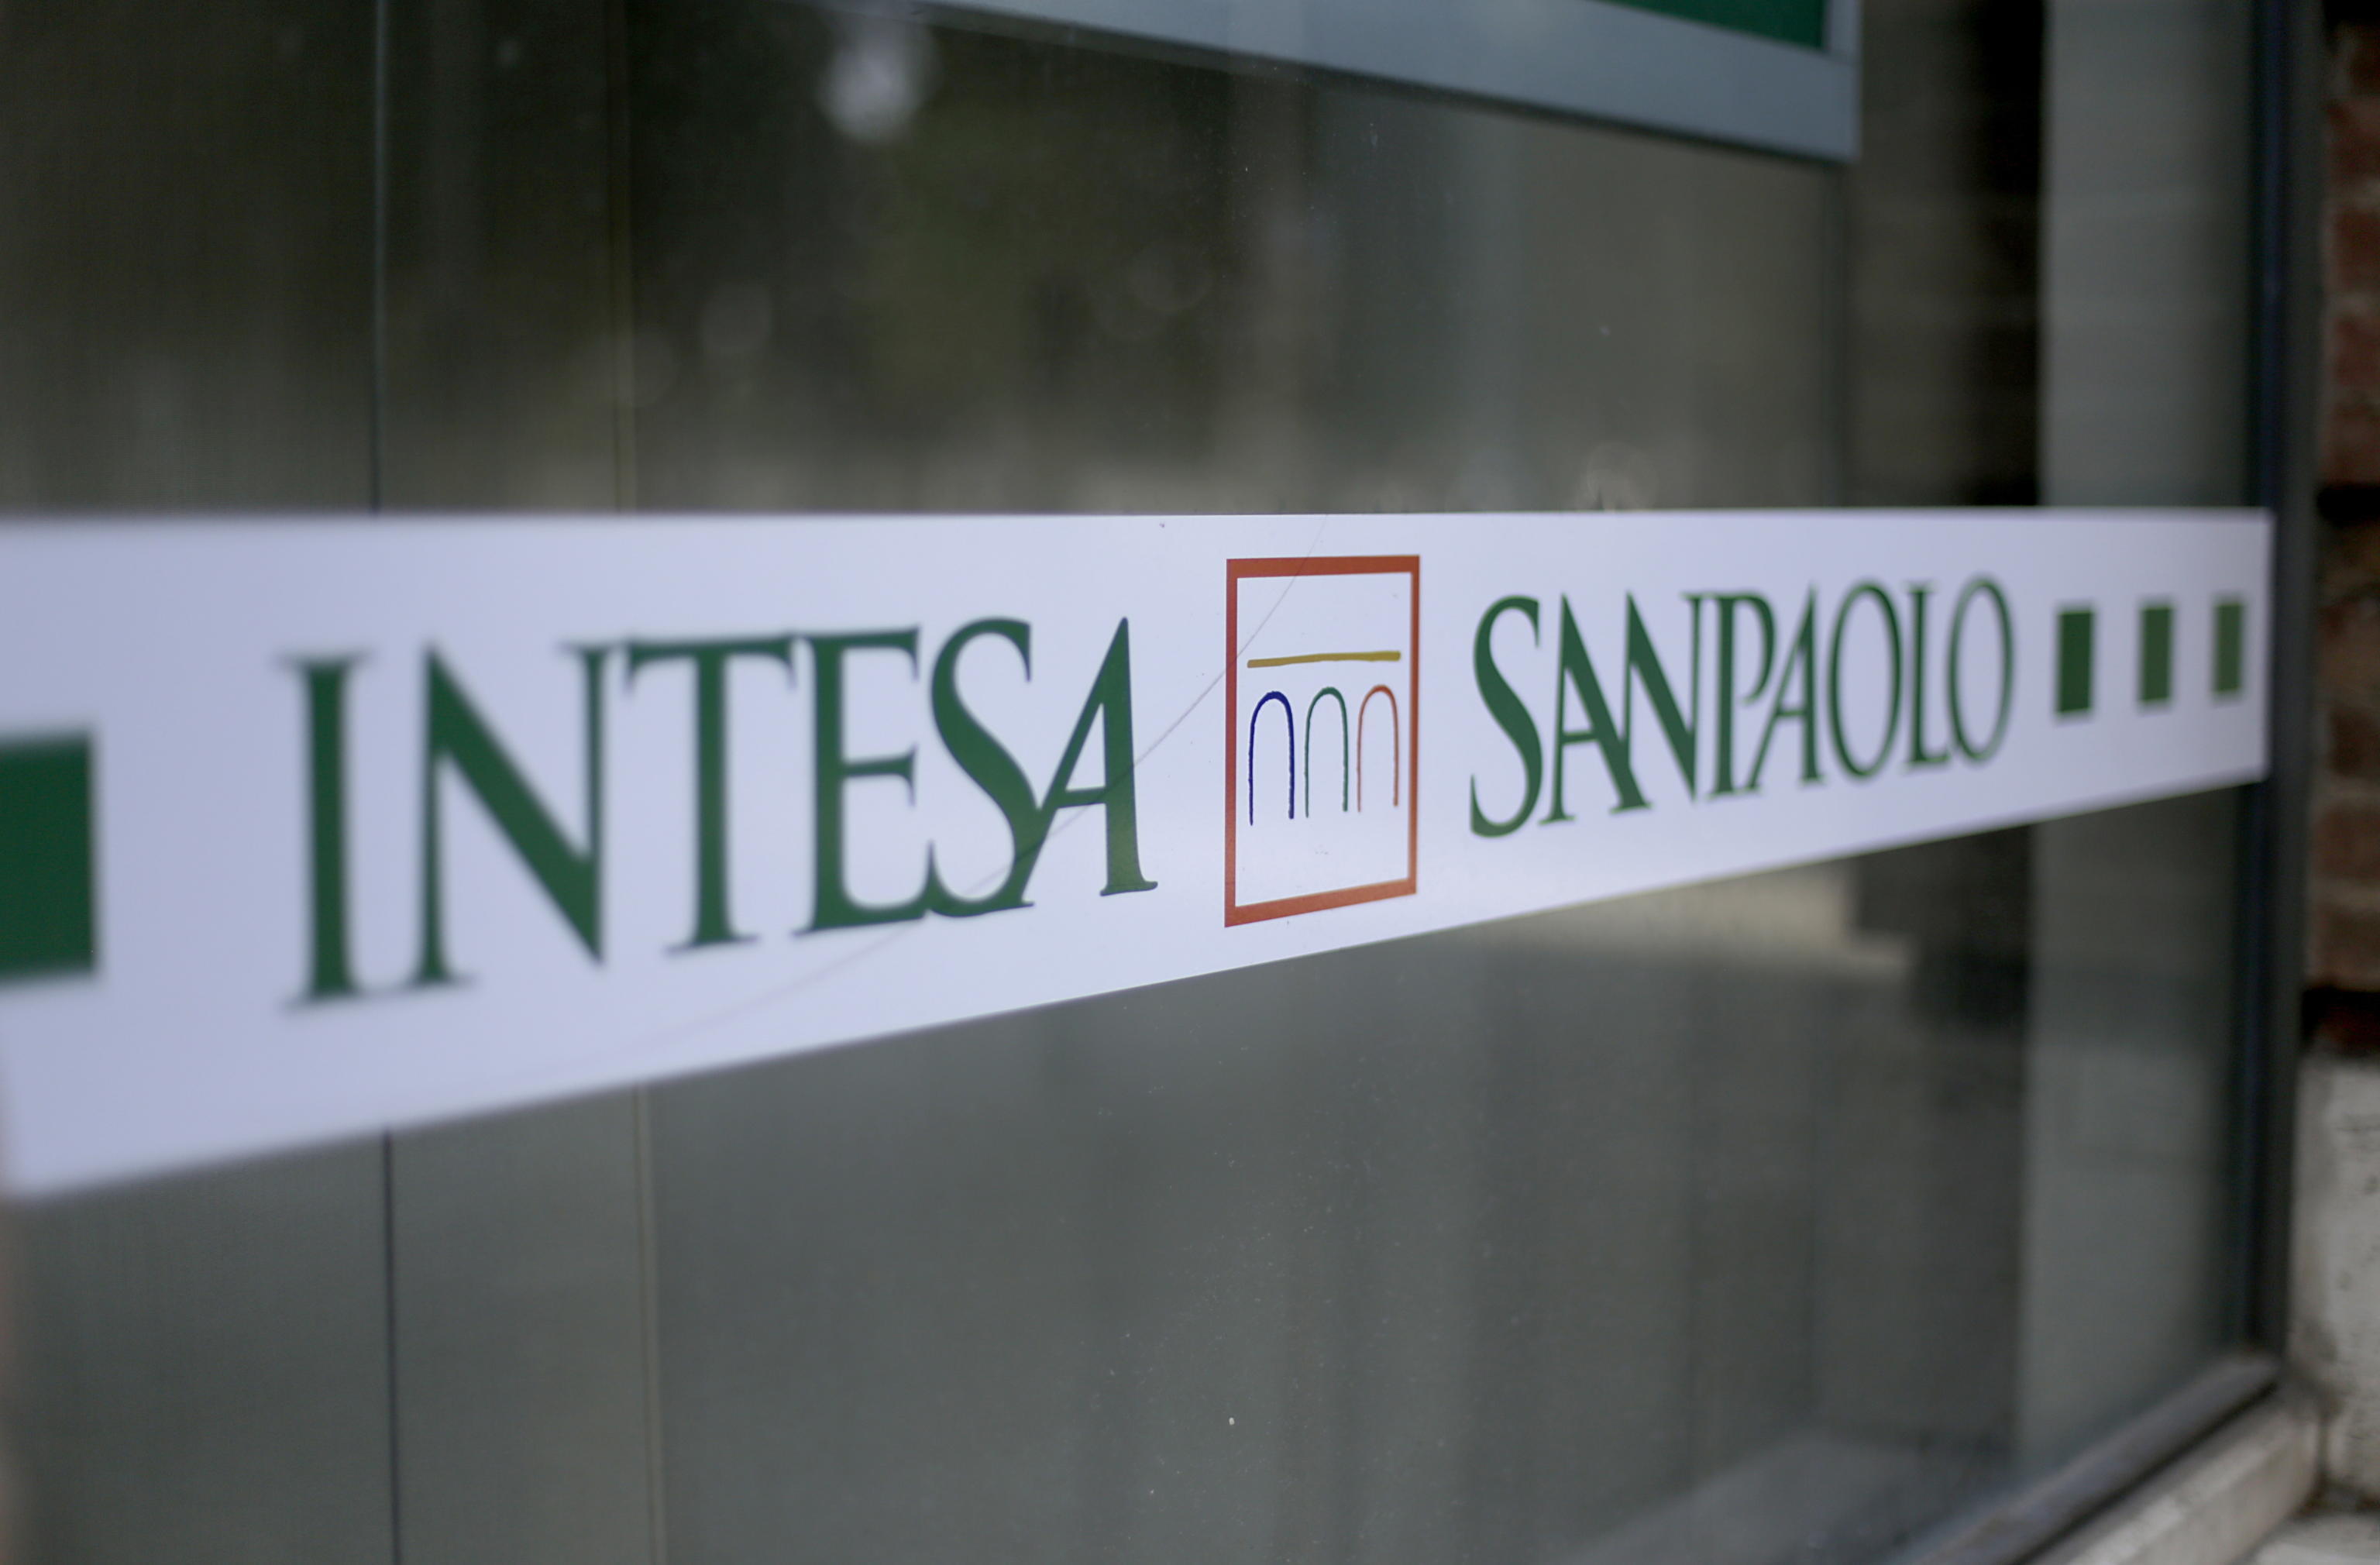 Banca intesa. Крупнейшие банки Италии. Intesa Sanpaolo список банков Италии. Банк Интеза реклама. Крупнейшие банки Италии система.